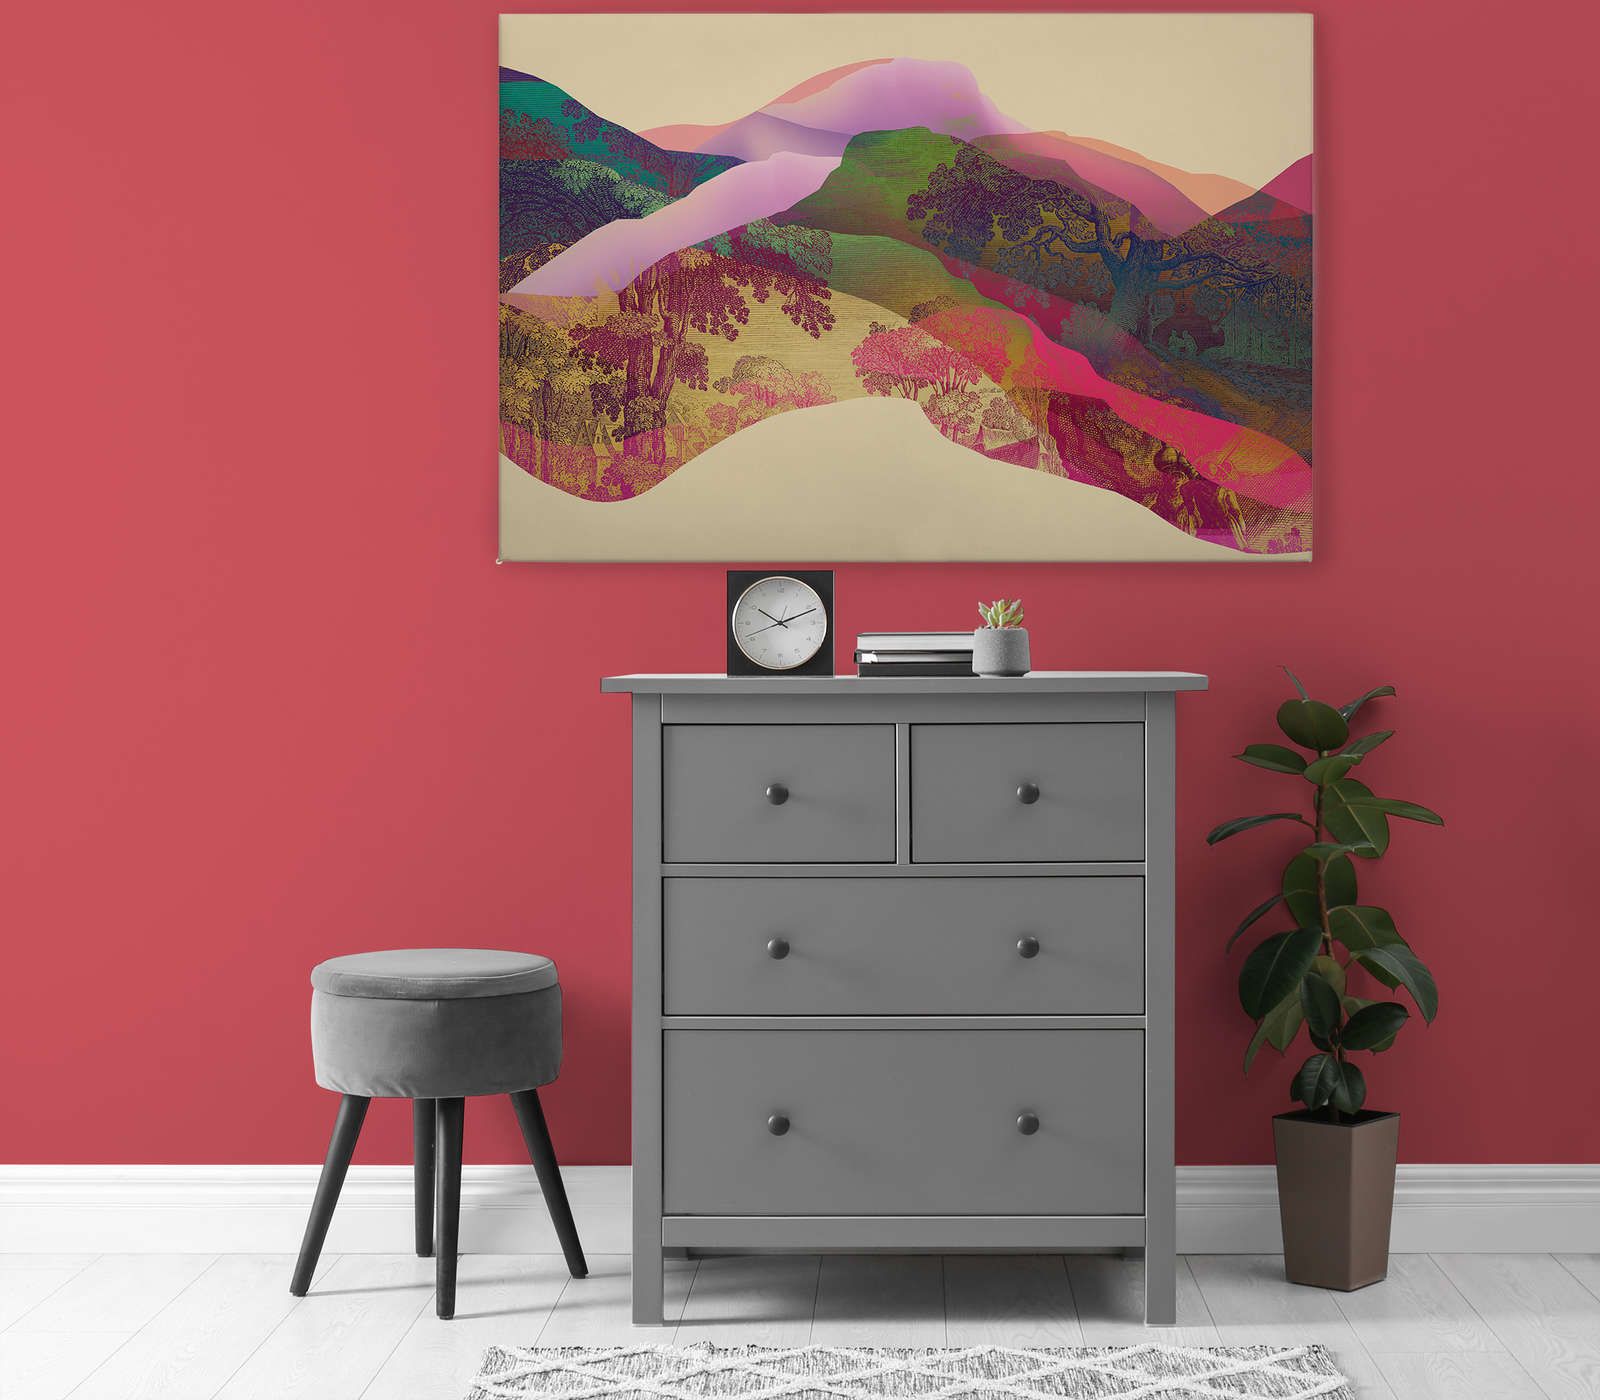             Magic Mountain 2 - Toile Paysage de montagne abstrait - 1,20 m x 0,80 m
        